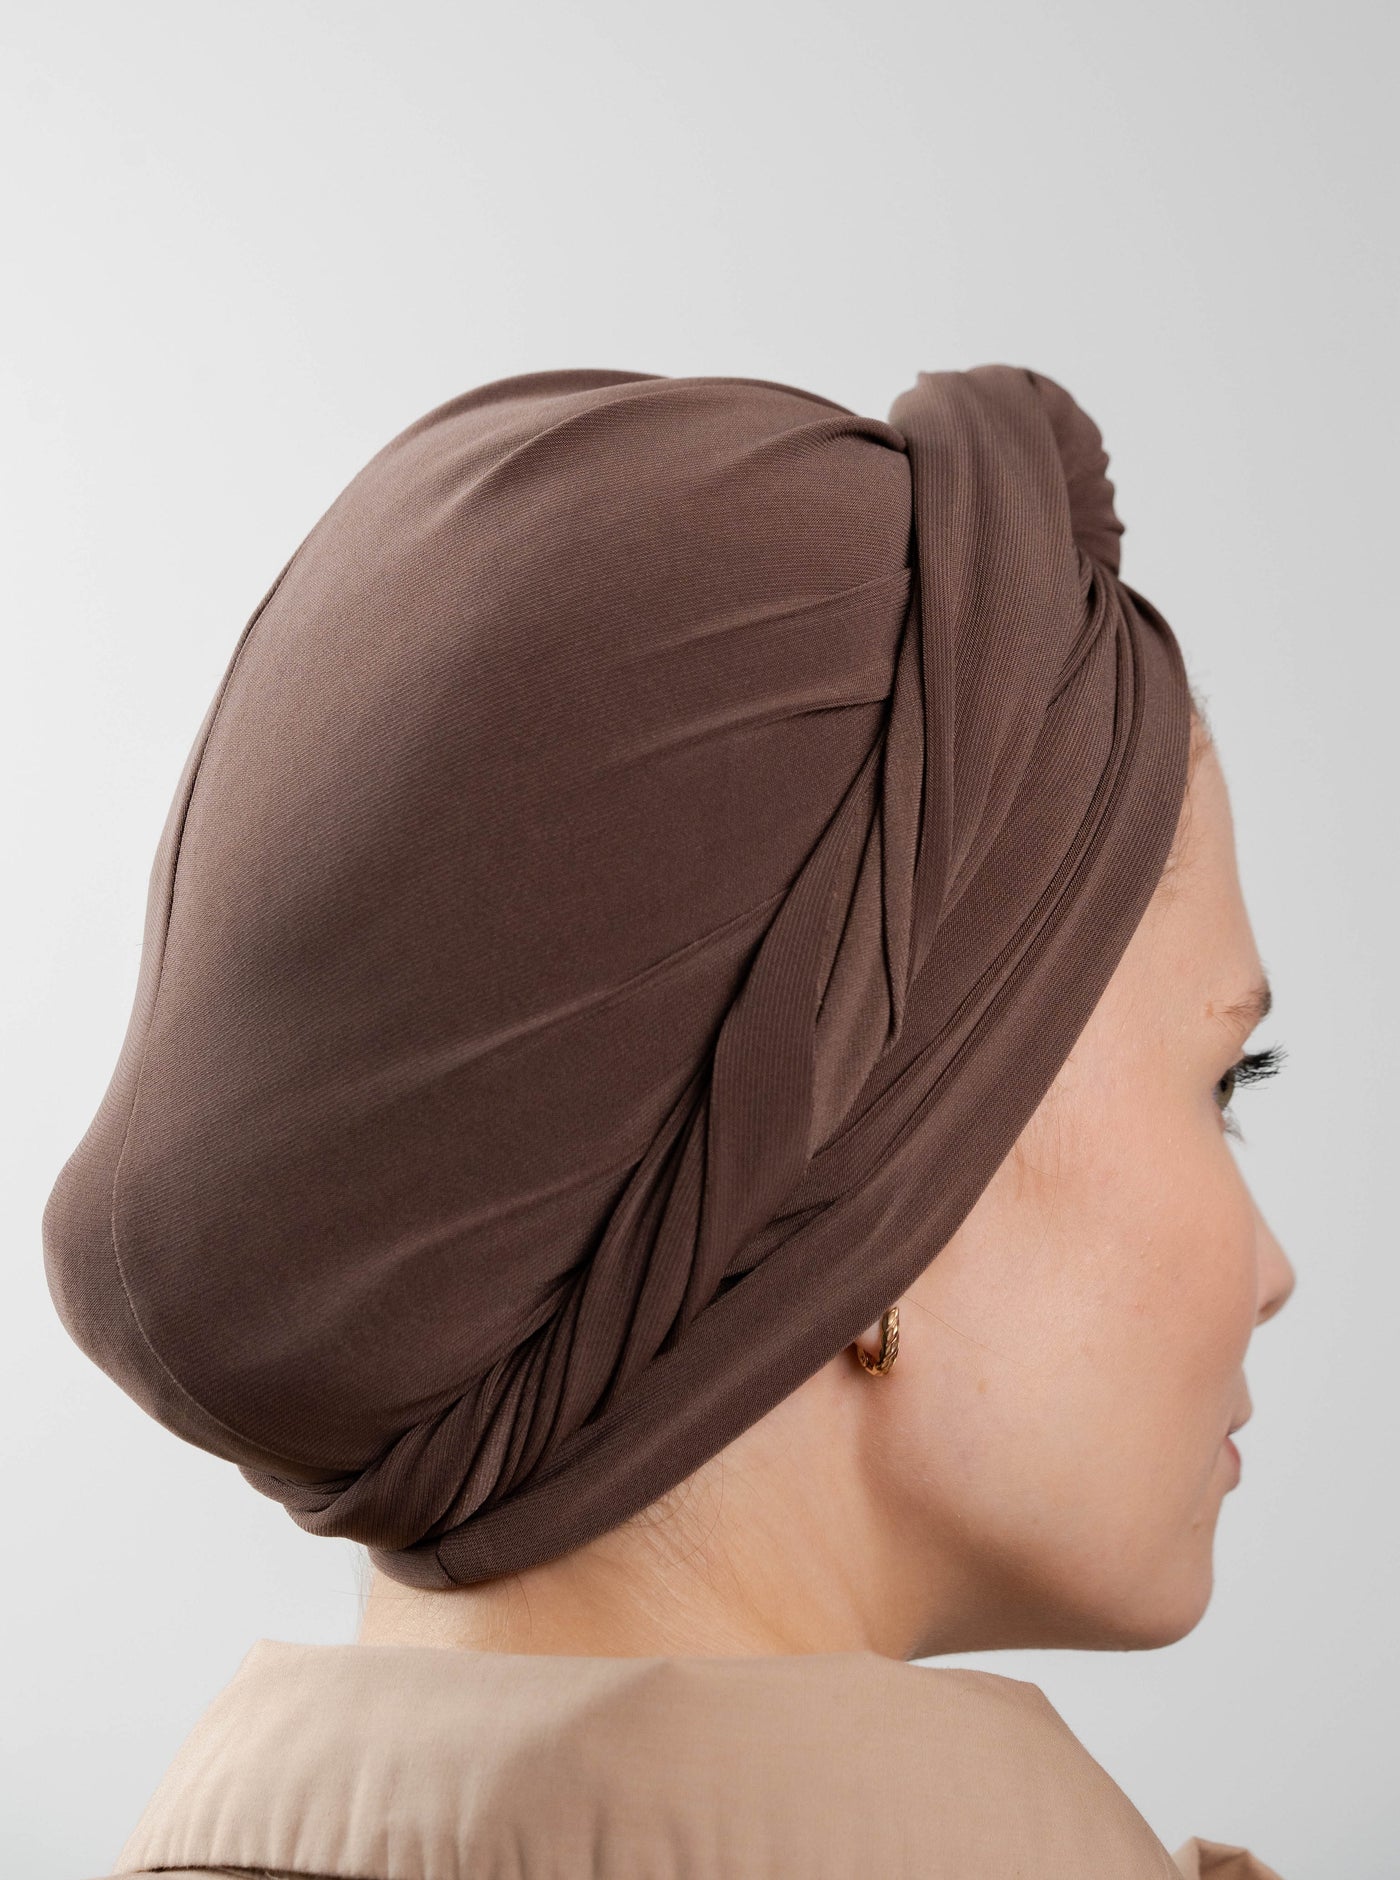 Multifunctional headwrap - brown